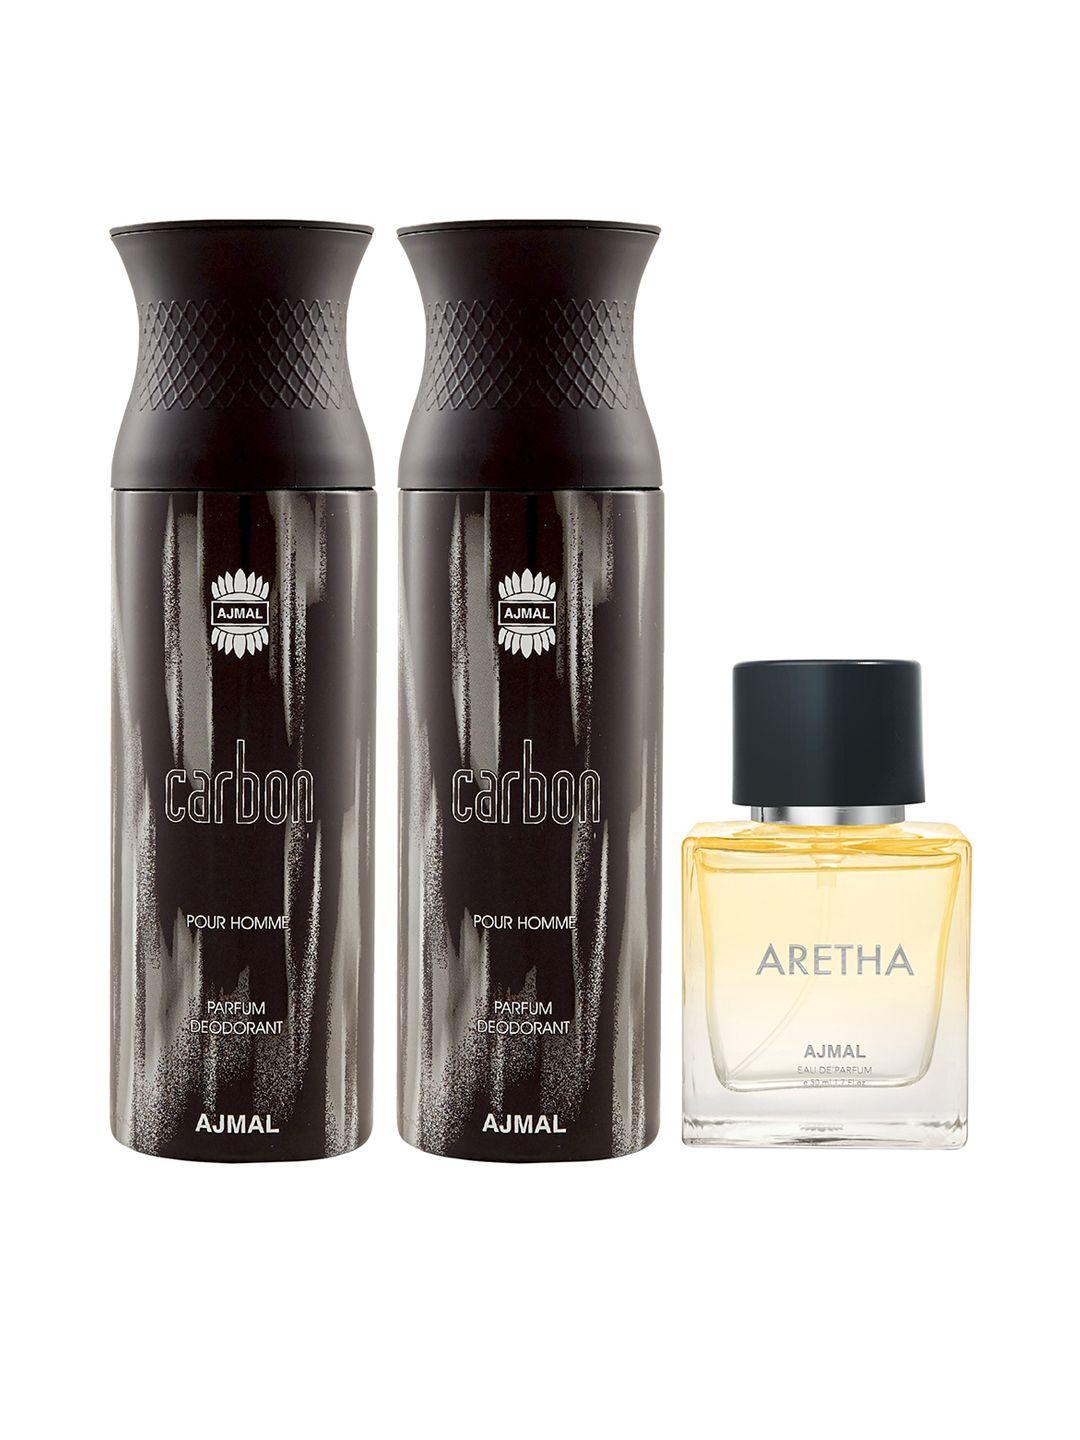 ajmal men 2 carbon deodorant 200 ml each & aretha eau de parfum 50 ml